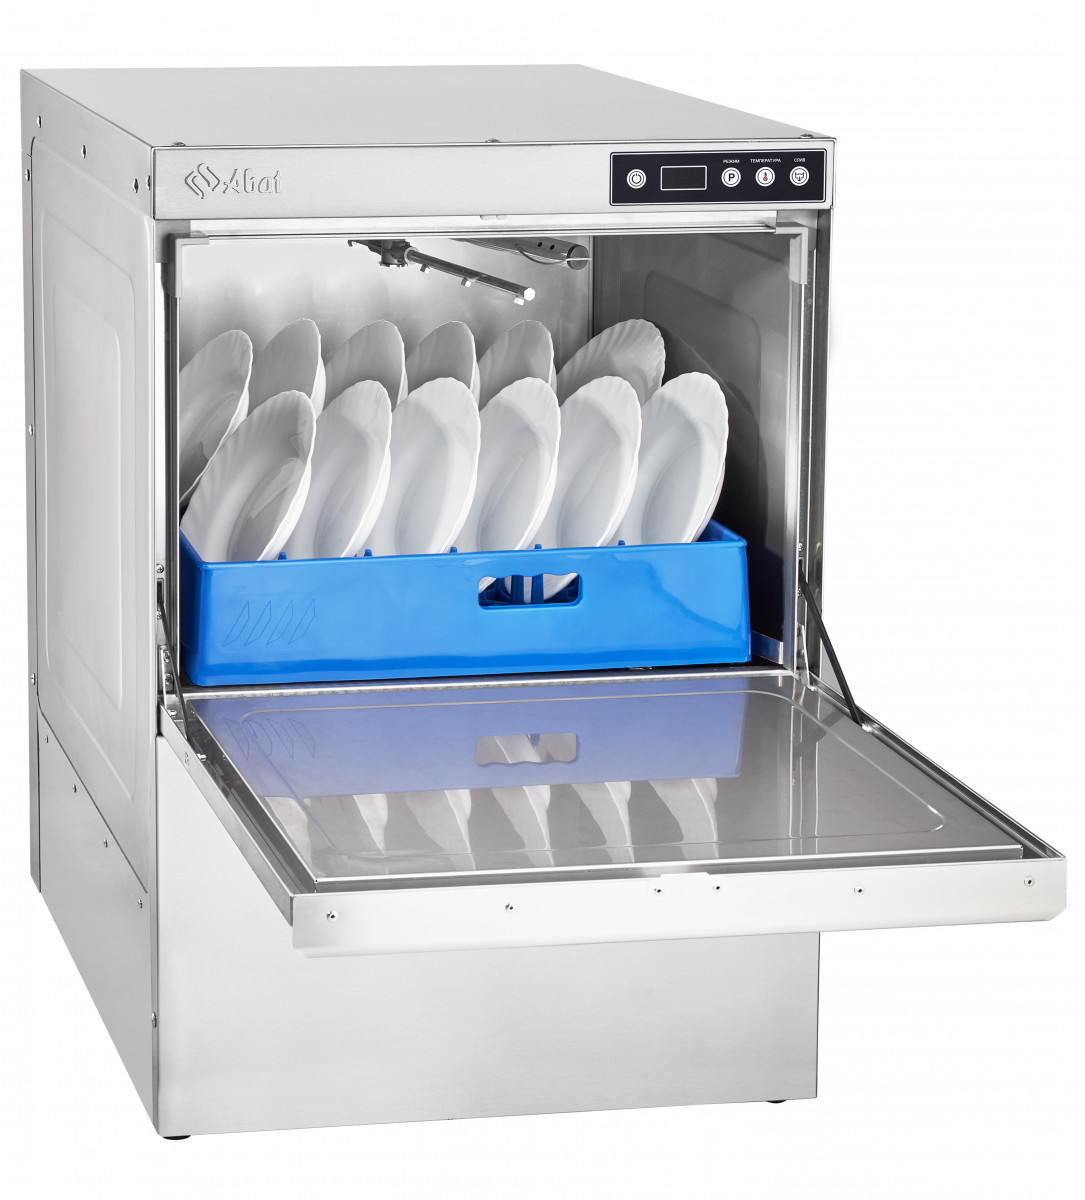 Машина посудомоечная МПК-500Ф-01-230 фронтальная, 500 тарелок/час, 2 программы мойки, 2 дозатора